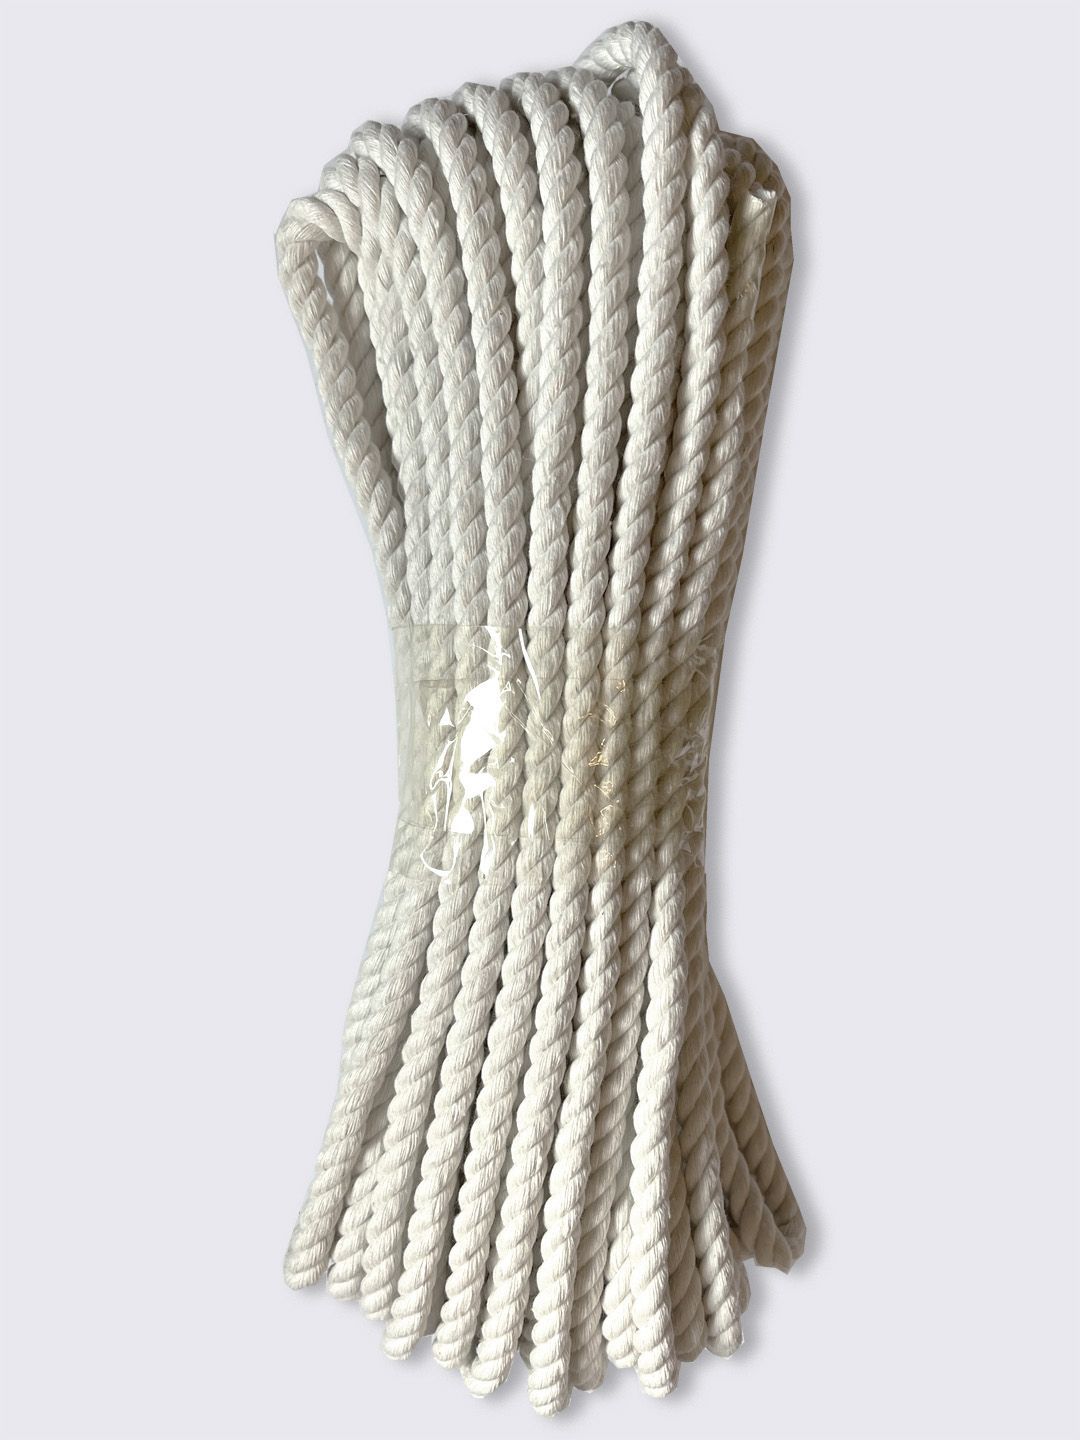 Веревка хлопчатобумажная диаметром 8 мм, длина 10 метров, белая